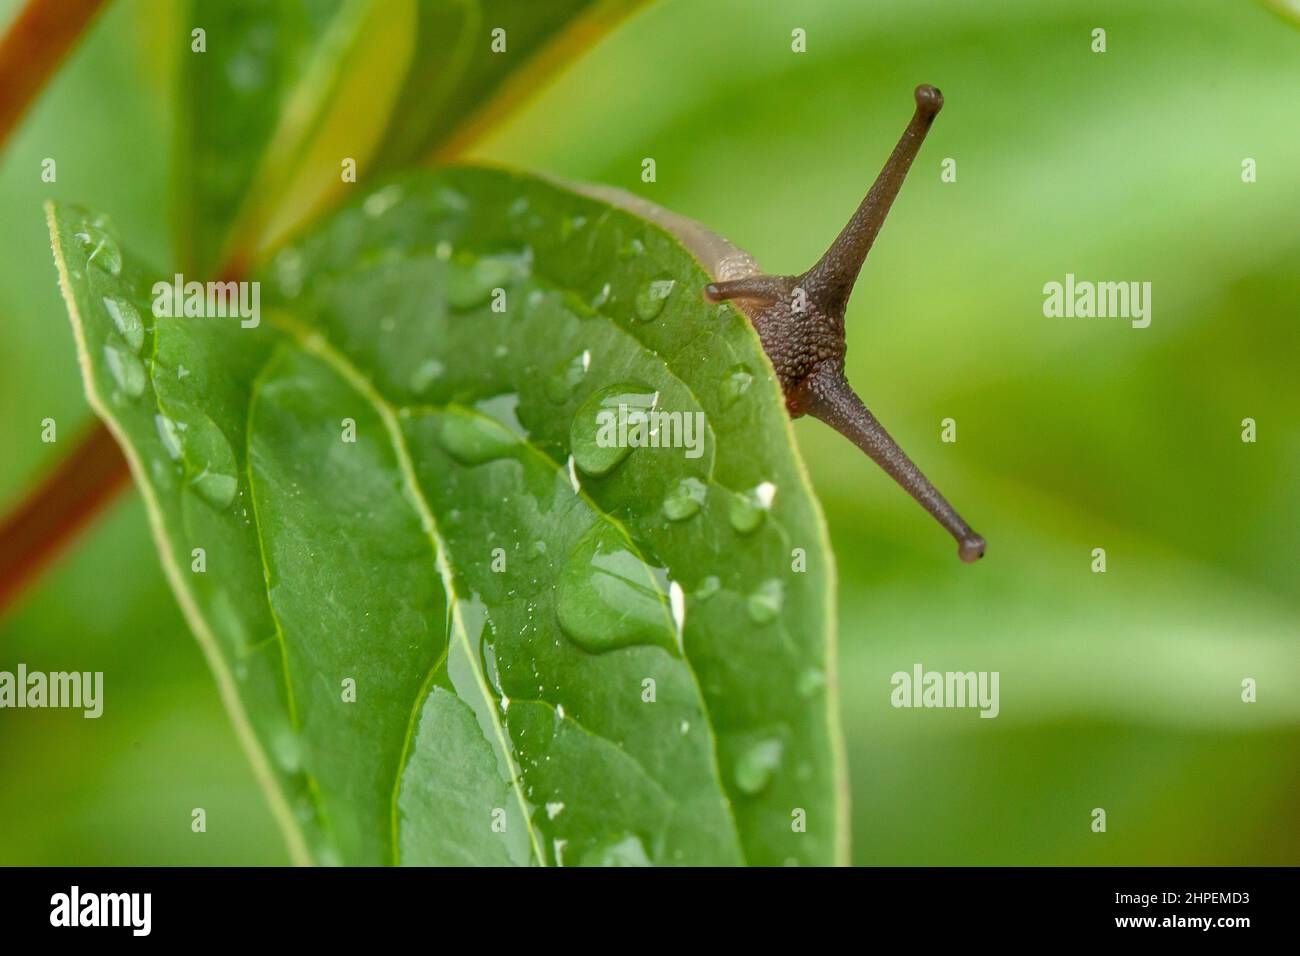 Cute garden snail close up peeking over a wet leaf. Stock Photo